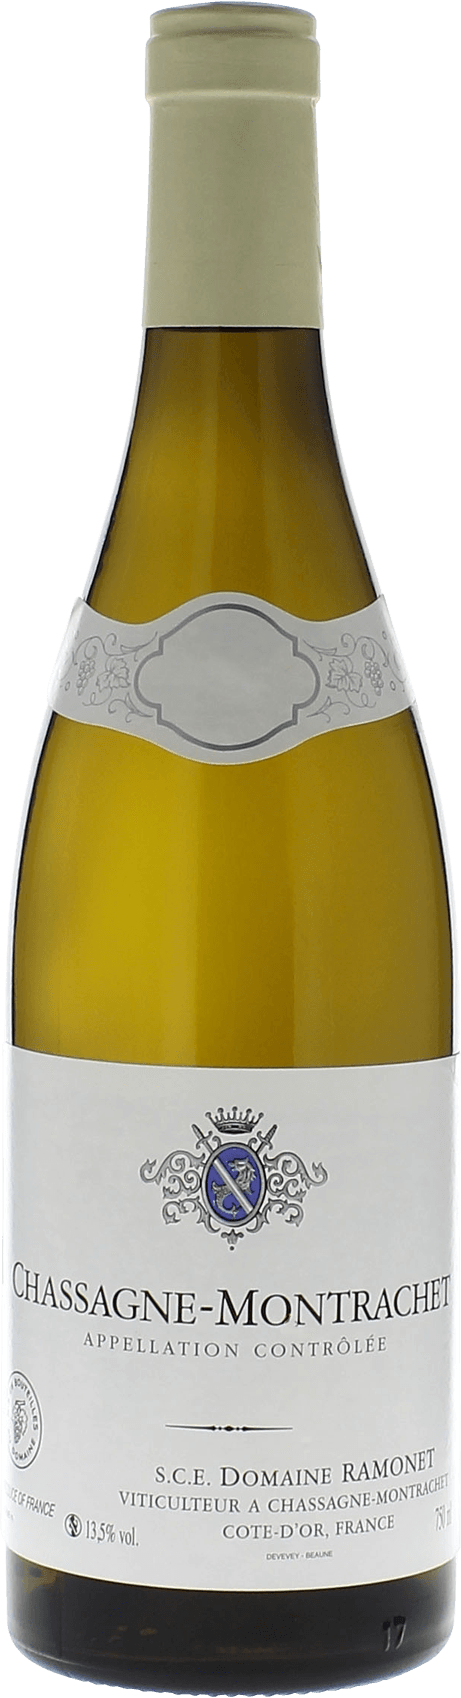 Chassagne montrachet 2017 Domaine RAMONET, Bourgogne blanc